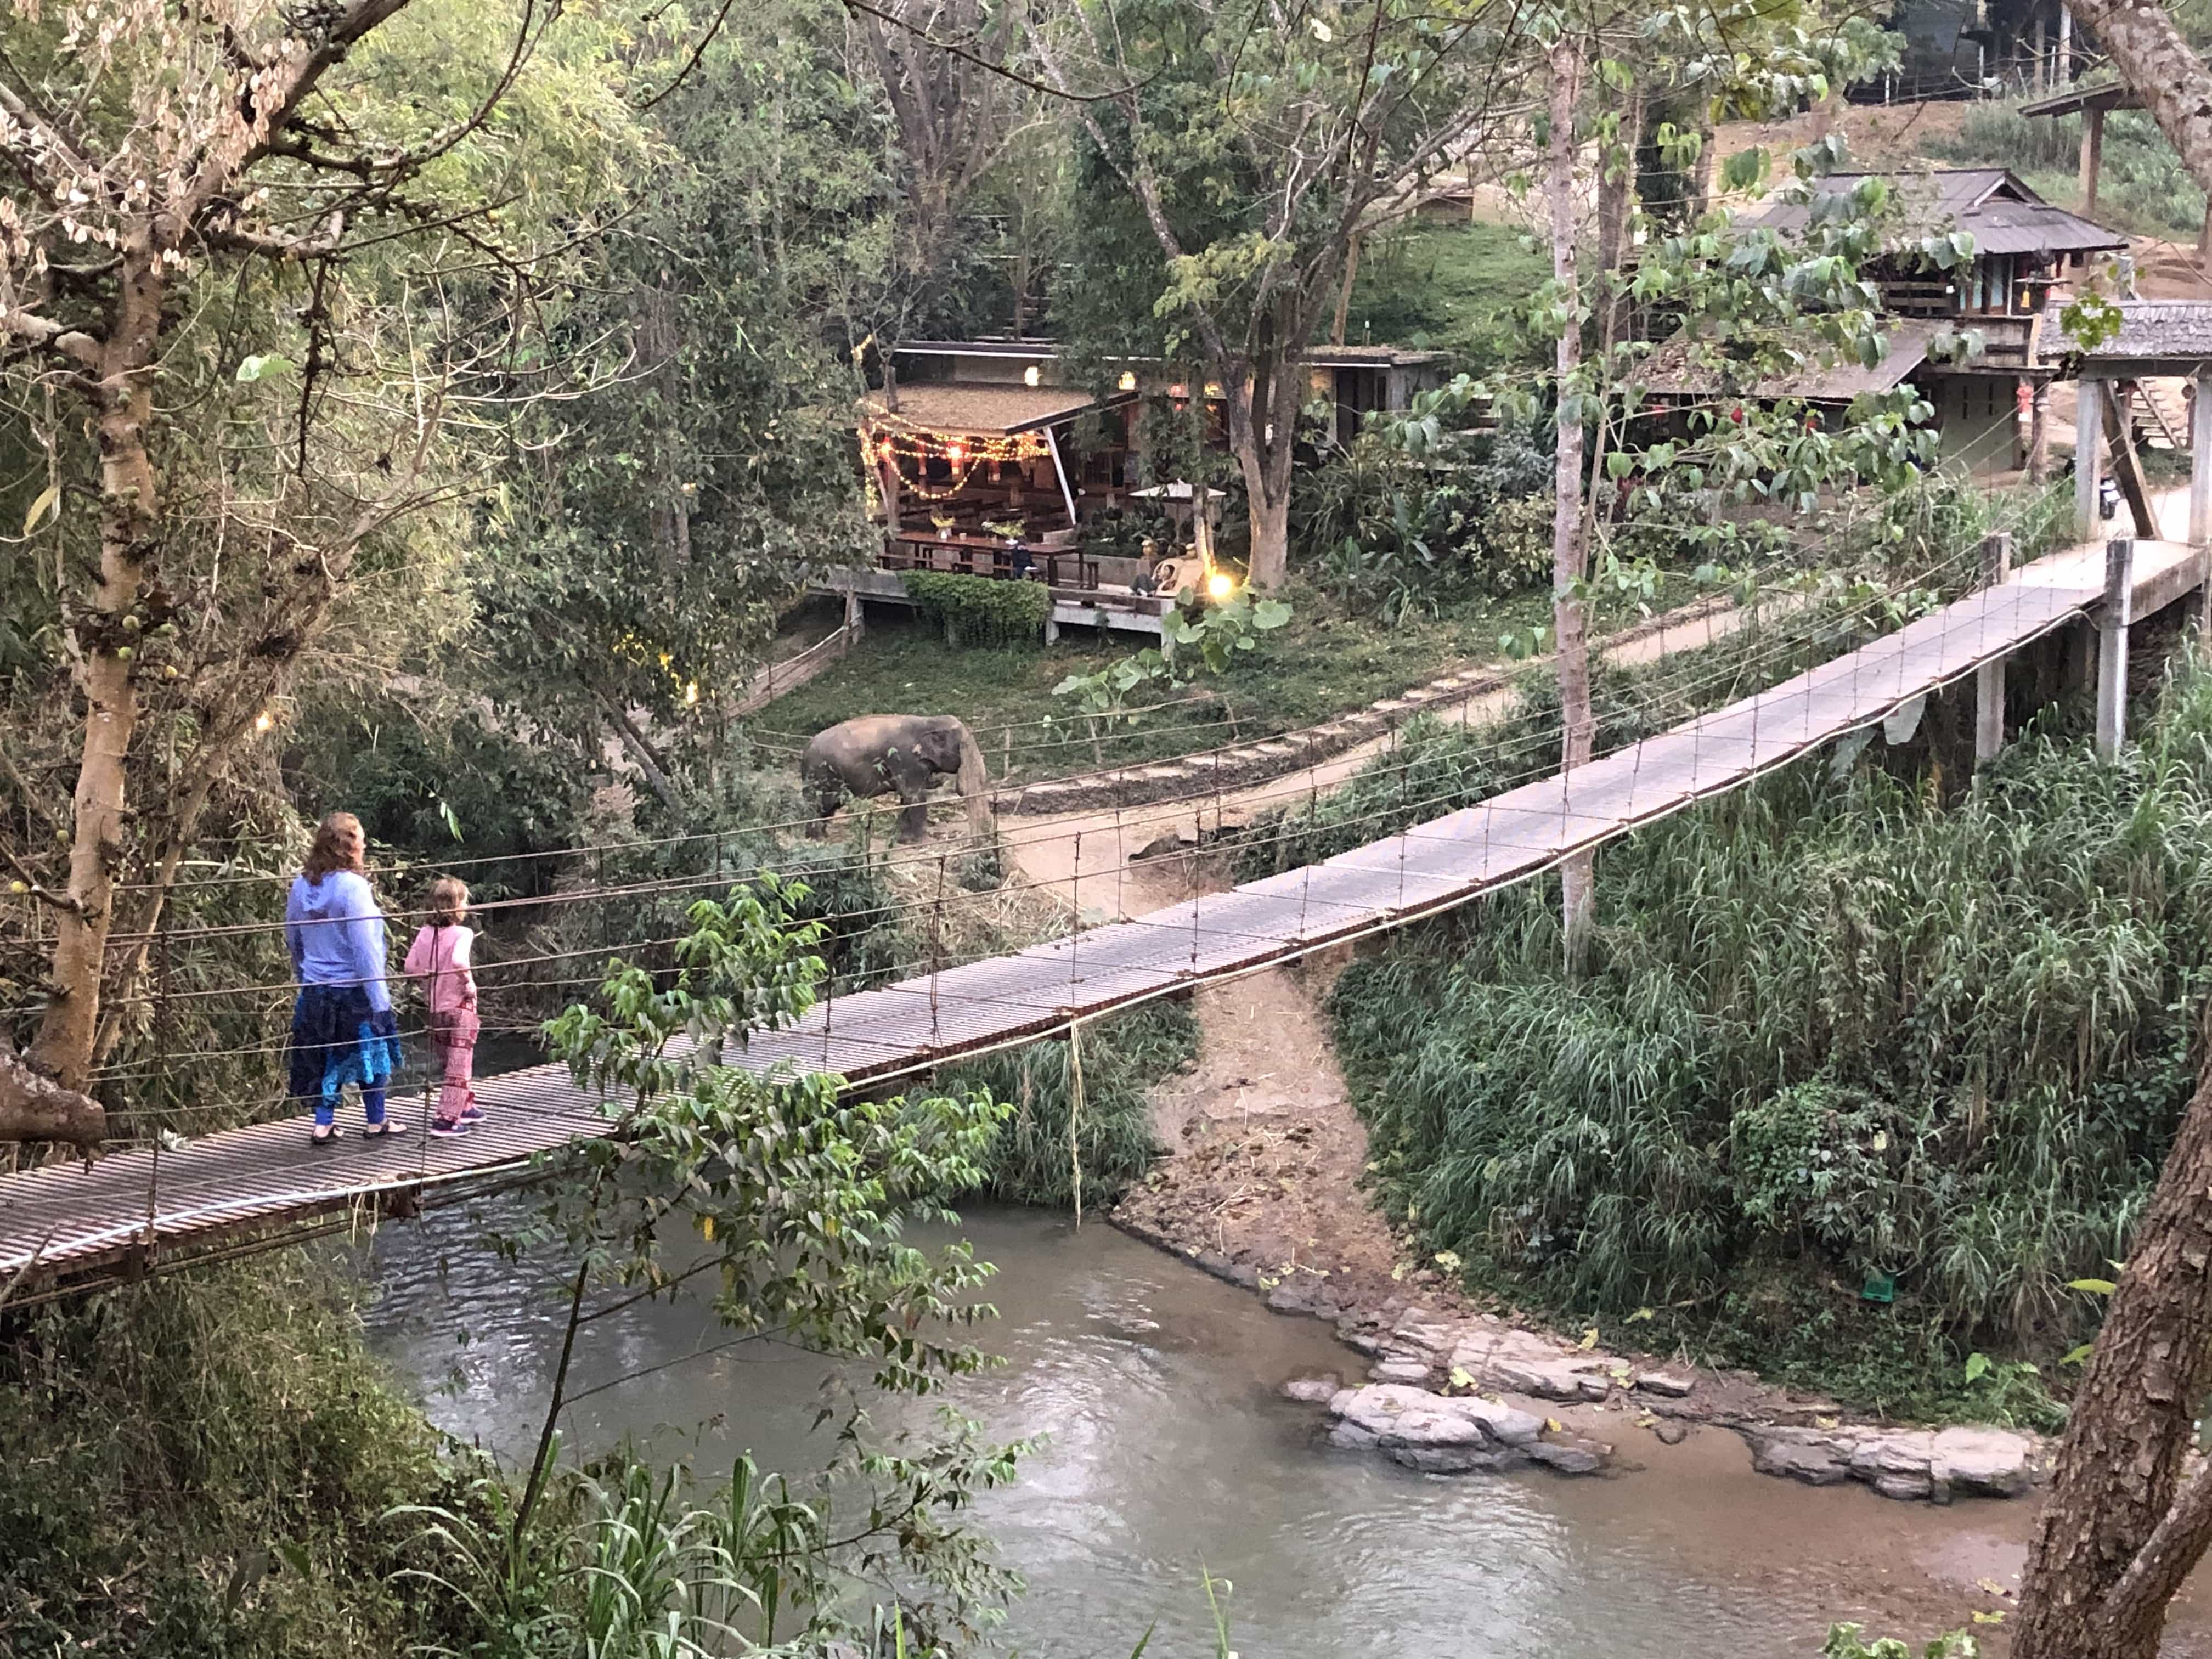 The bridge to elephantville